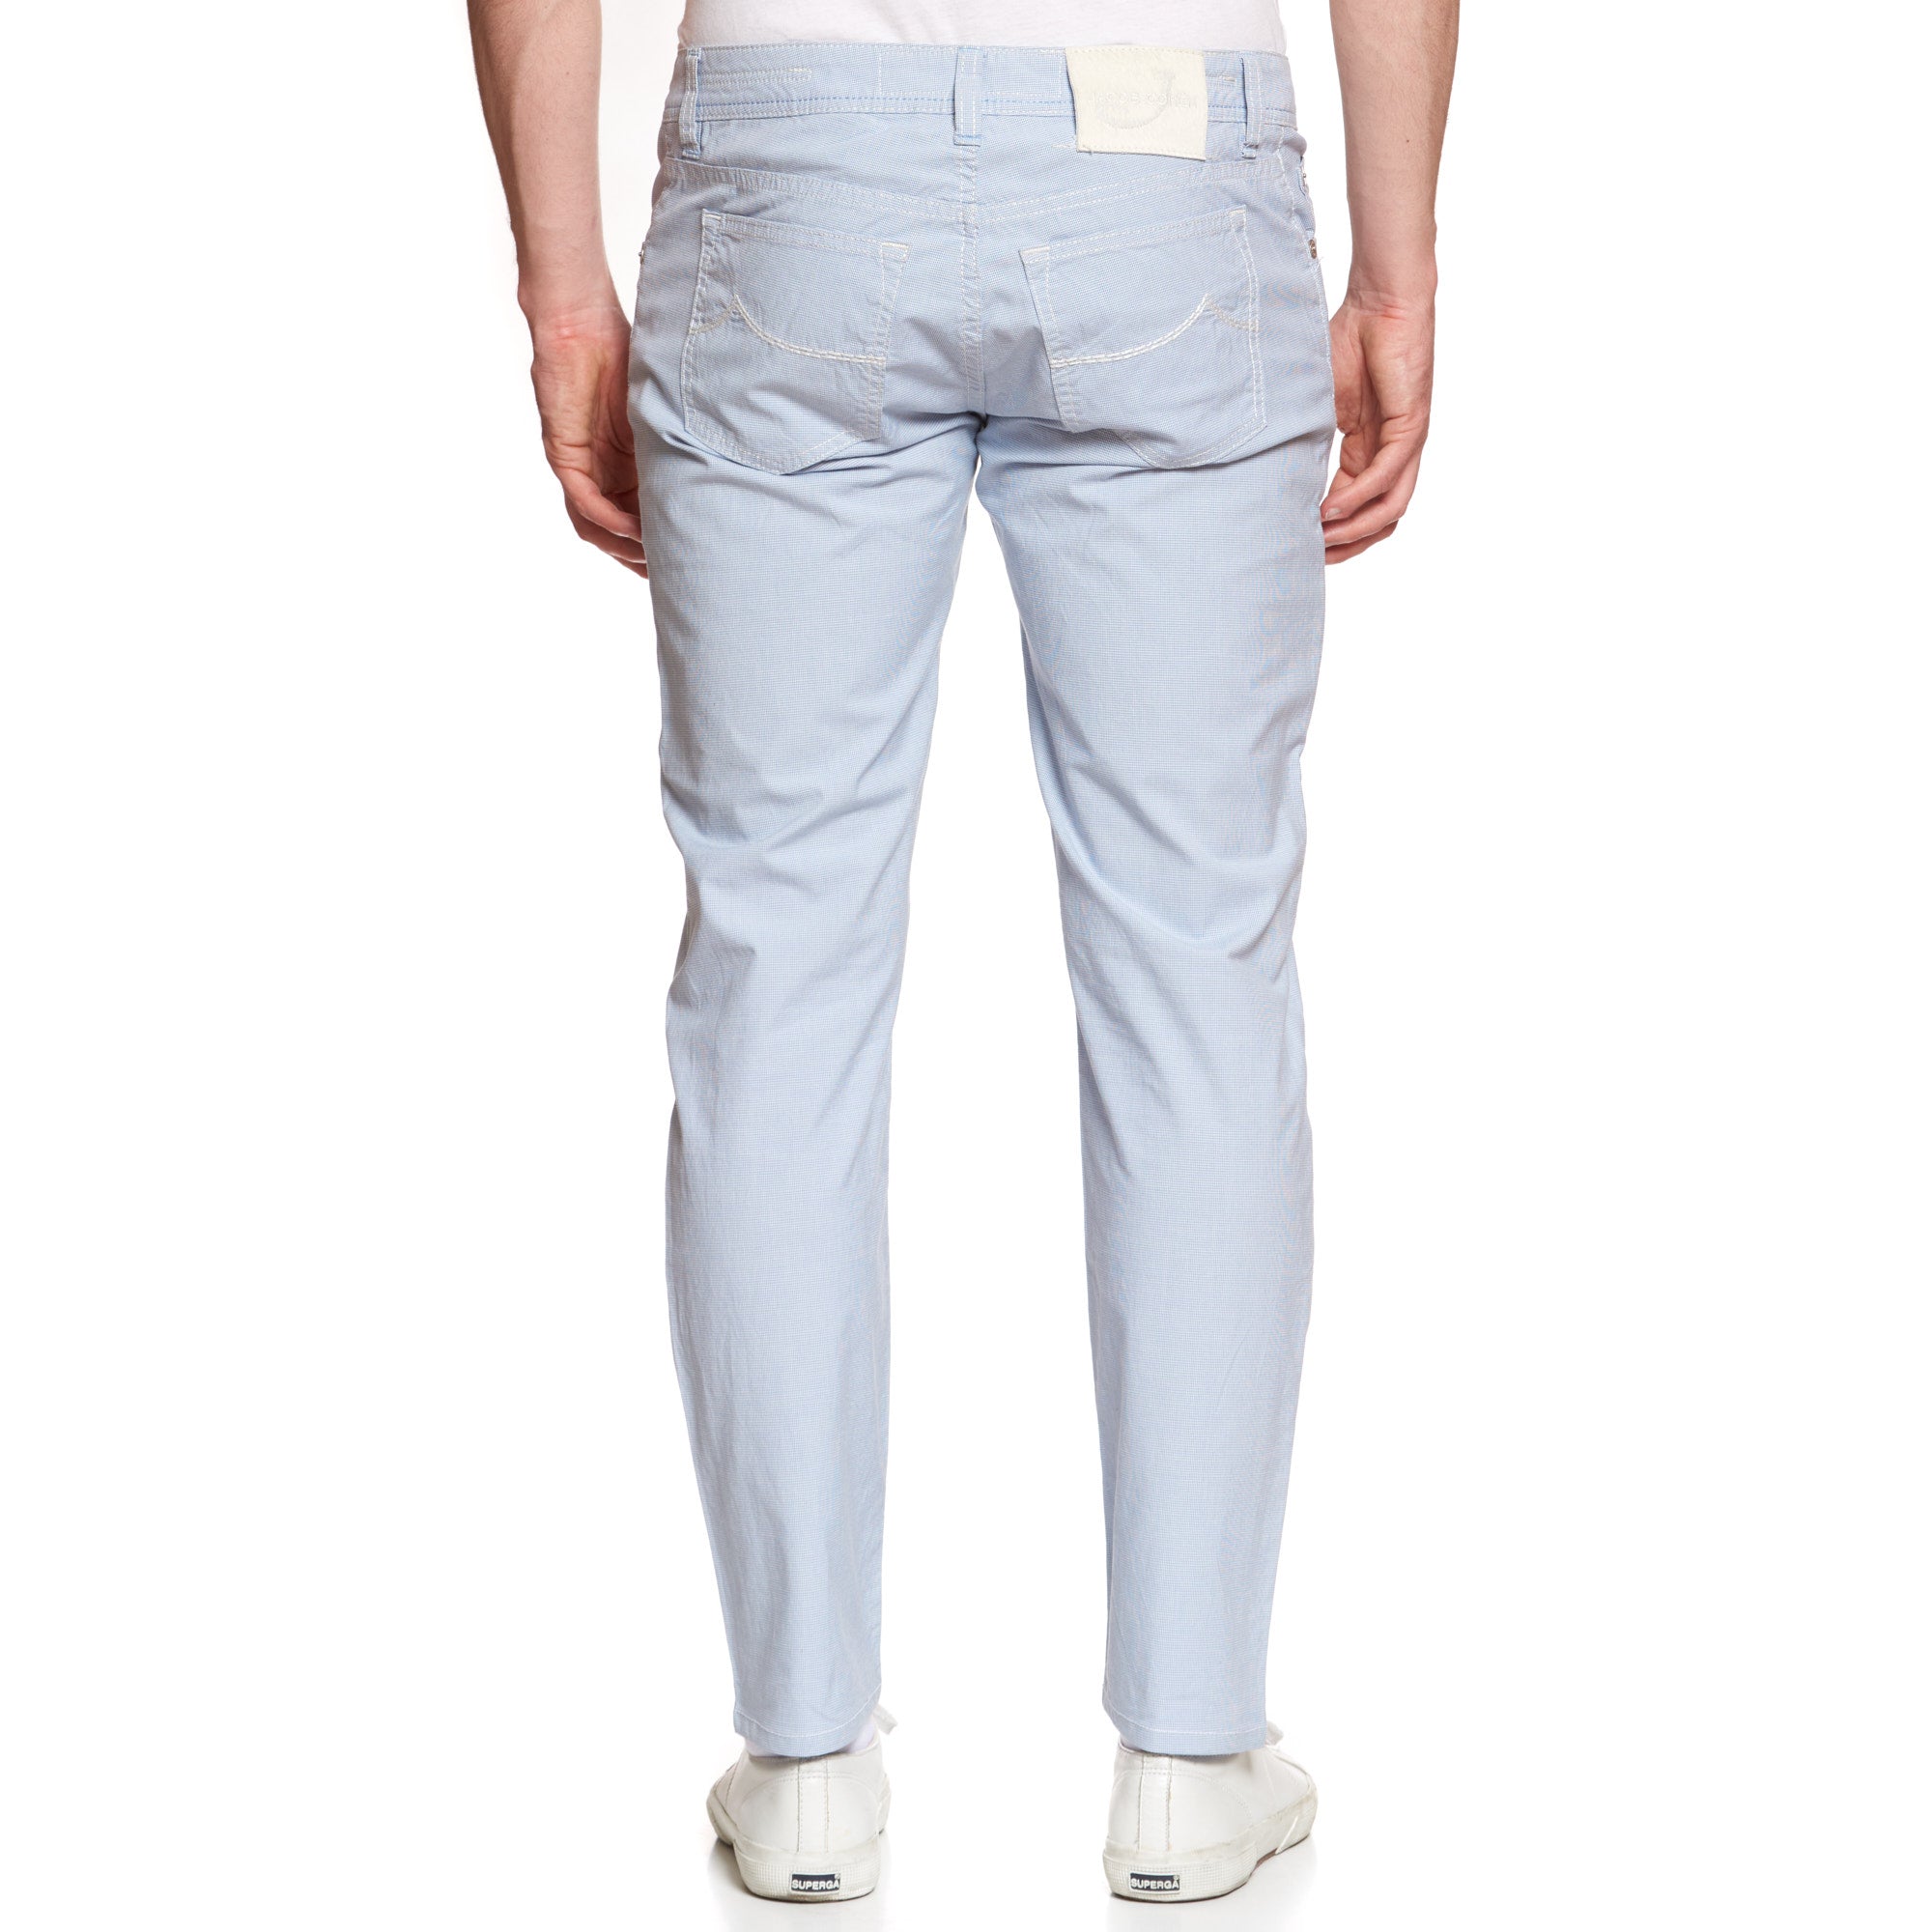 JACOB COHEN J688 Comfort Blue Cotton Stretch Slim Jeans Pants US 34 JACOB COHEN